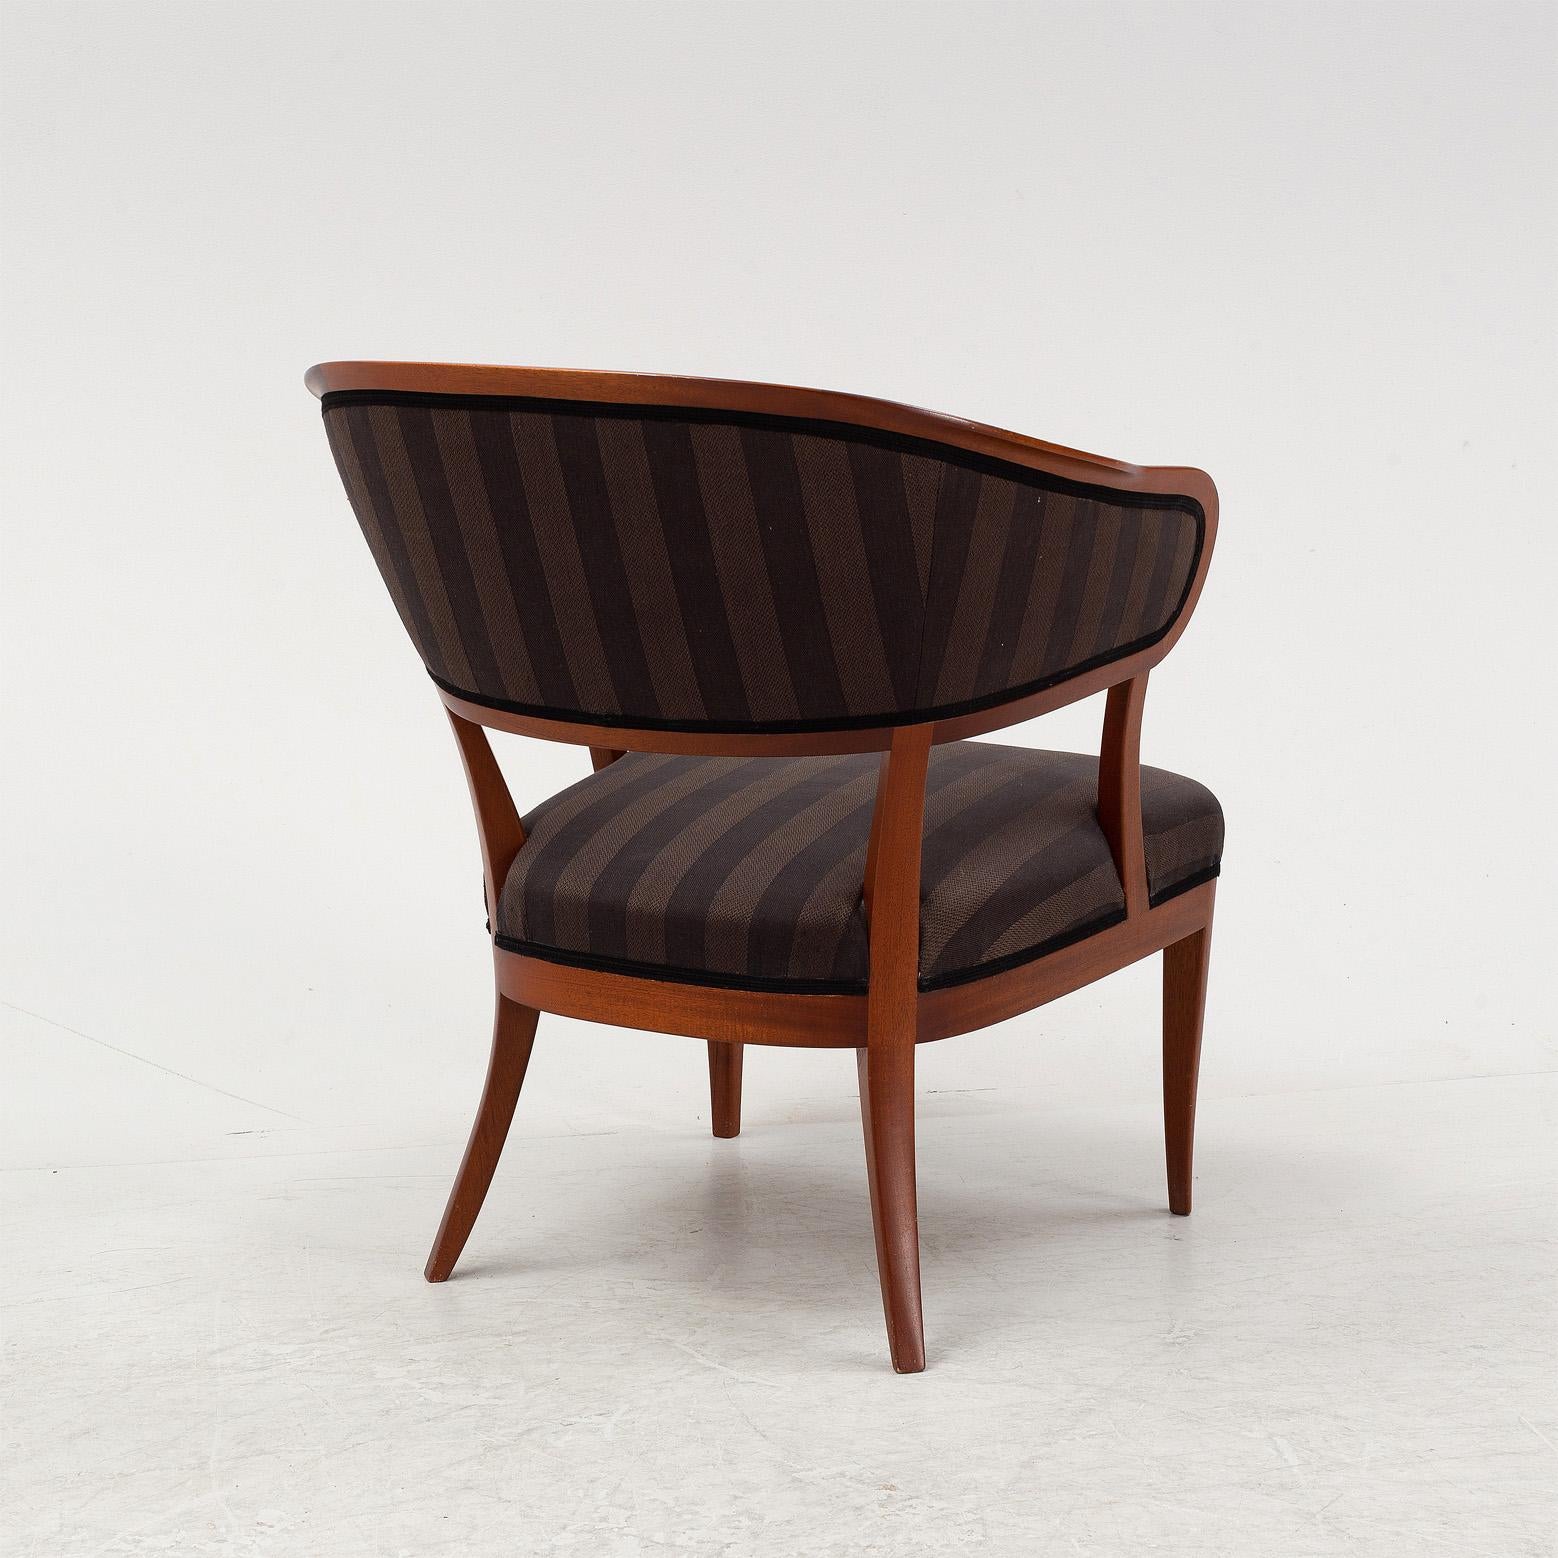 Carl Malmsten ist einer der bekanntesten Möbeldesigner Schwedens. Viele seiner Möbel gelten als moderne Designklassiker, zum Beispiel der Rohrstuhl 